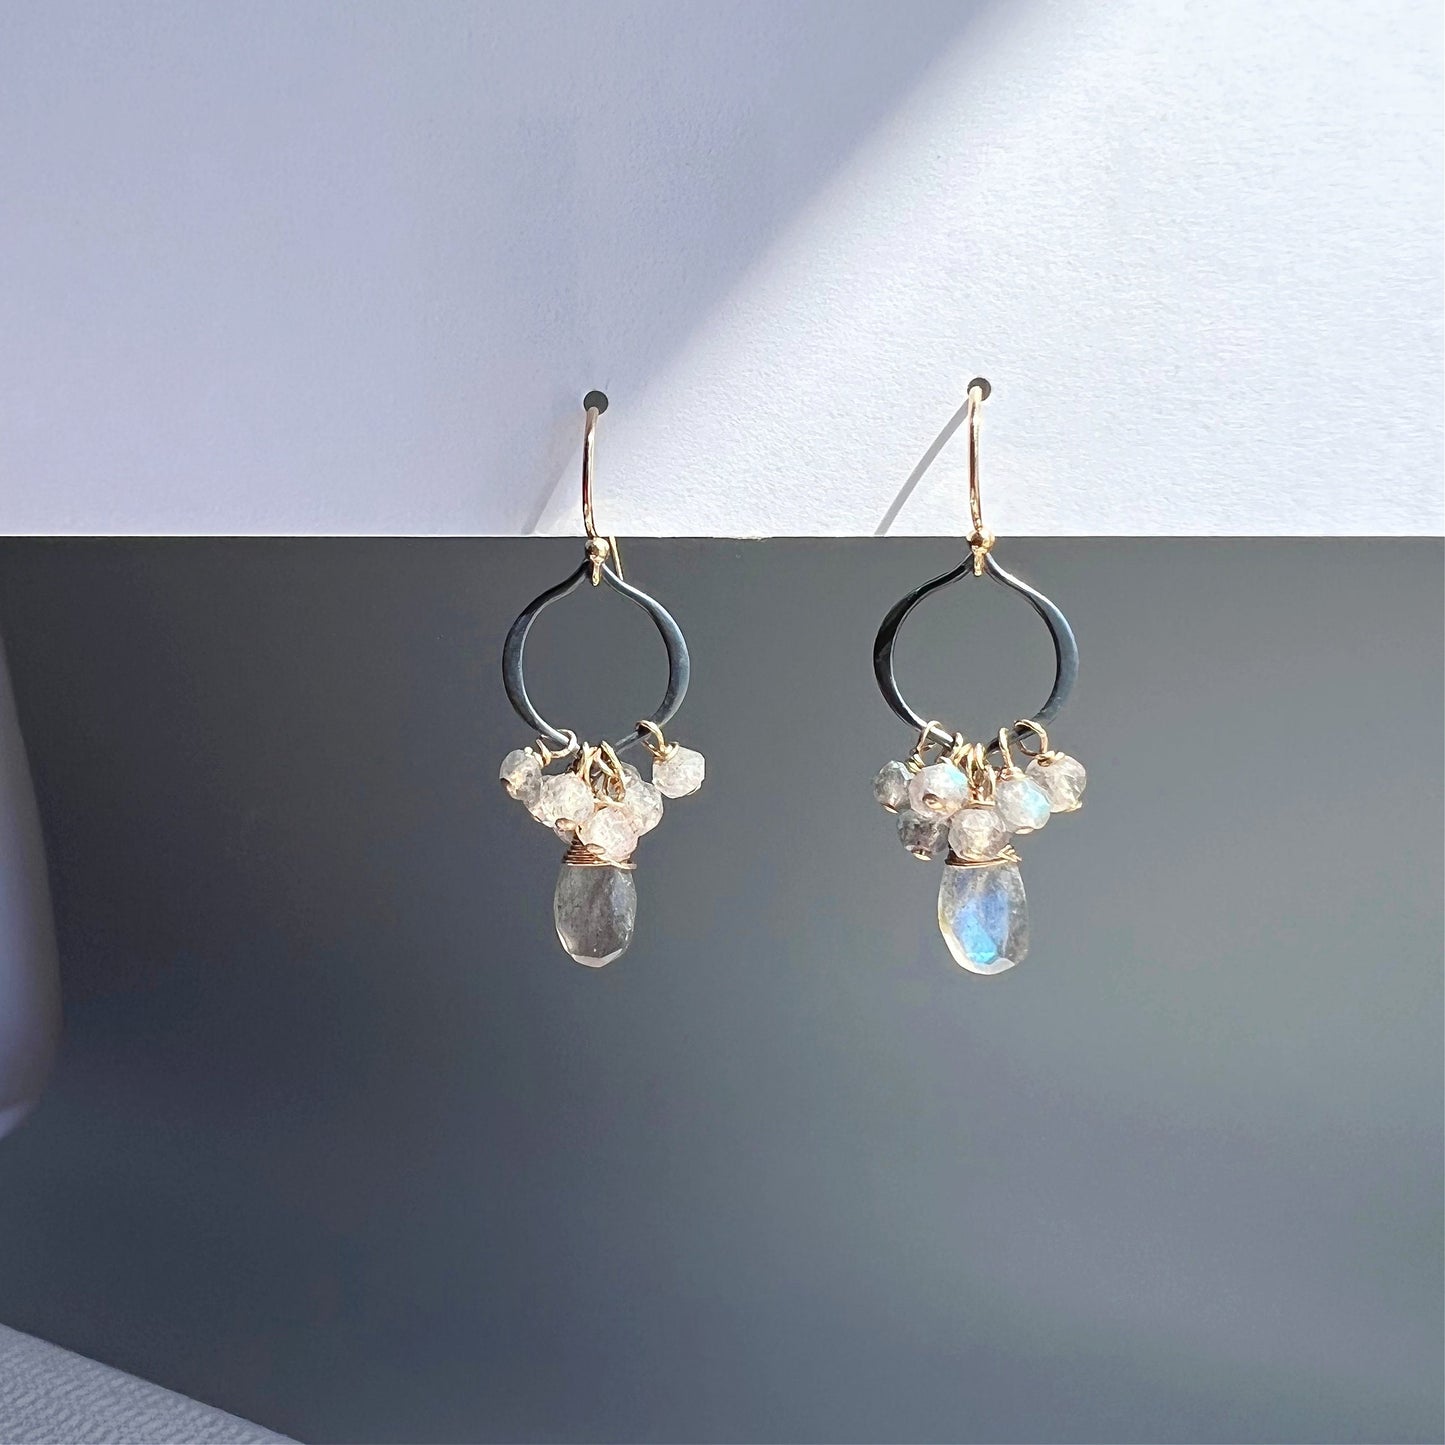 Labradorite Earrings,Dainty Earrings,Gemstone Earrings,Mixed Metal Earrings,Gemstone Jewelry,Celestial Jewelry,Modern Labradorite Earrings